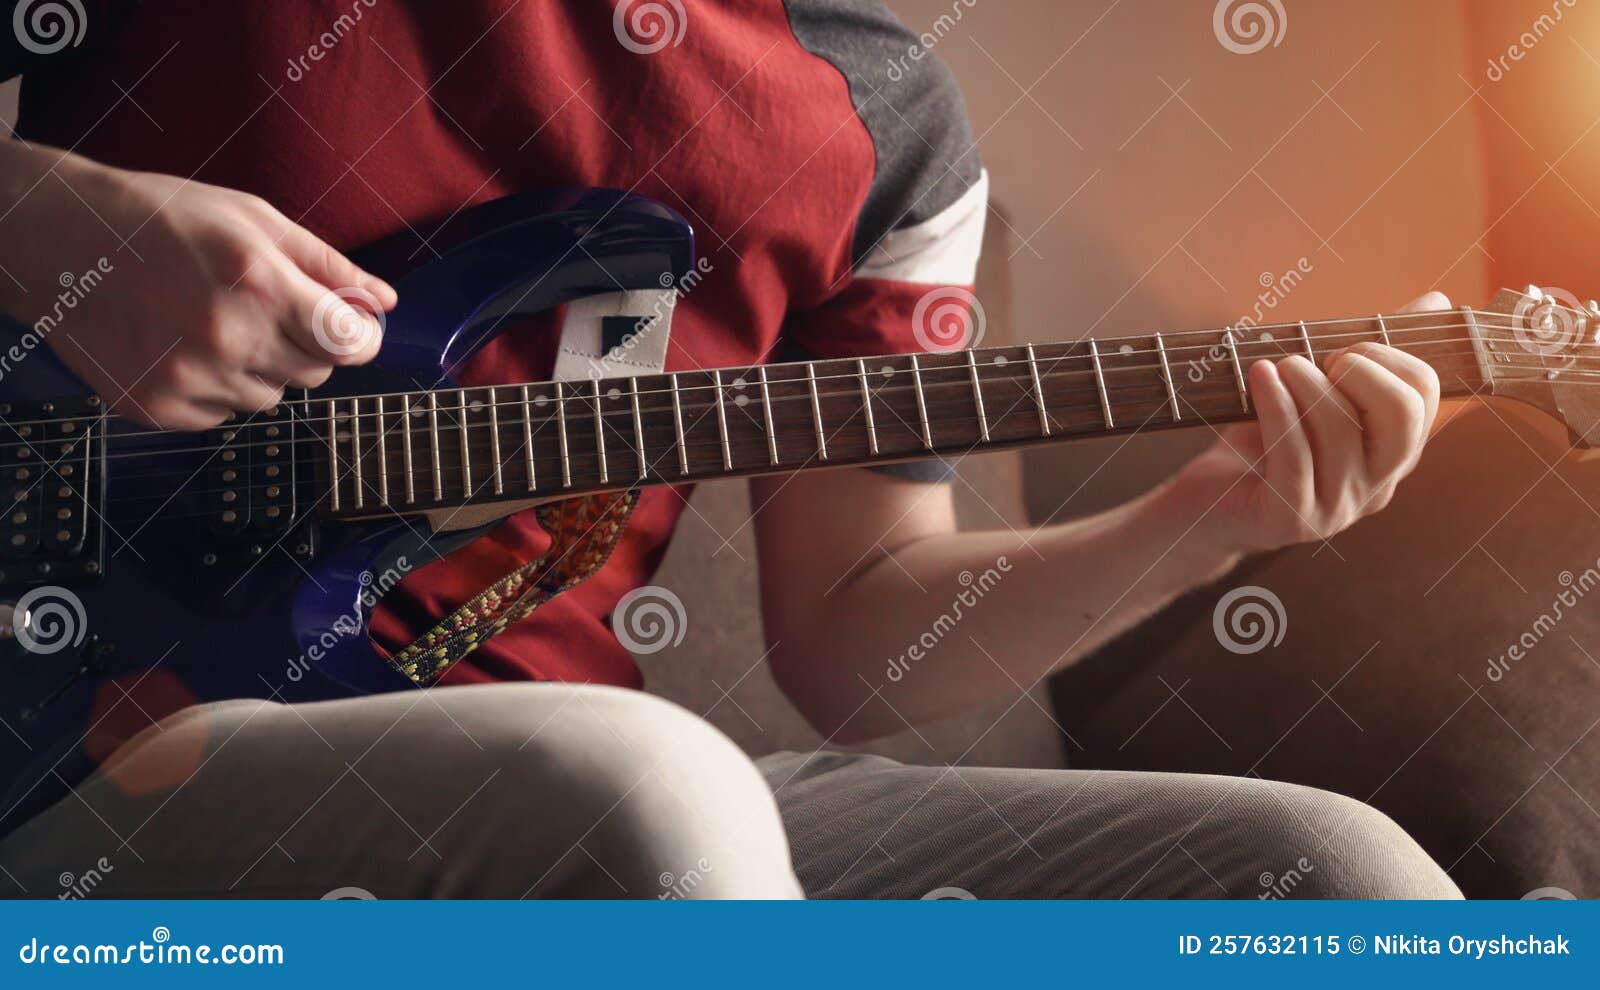 男人弹电吉他 库存图片. 图片 包括有 青少年, 吉他弹奏者, 岩石, 男人, 金属, 业余爱好, 吉他 - 169667037